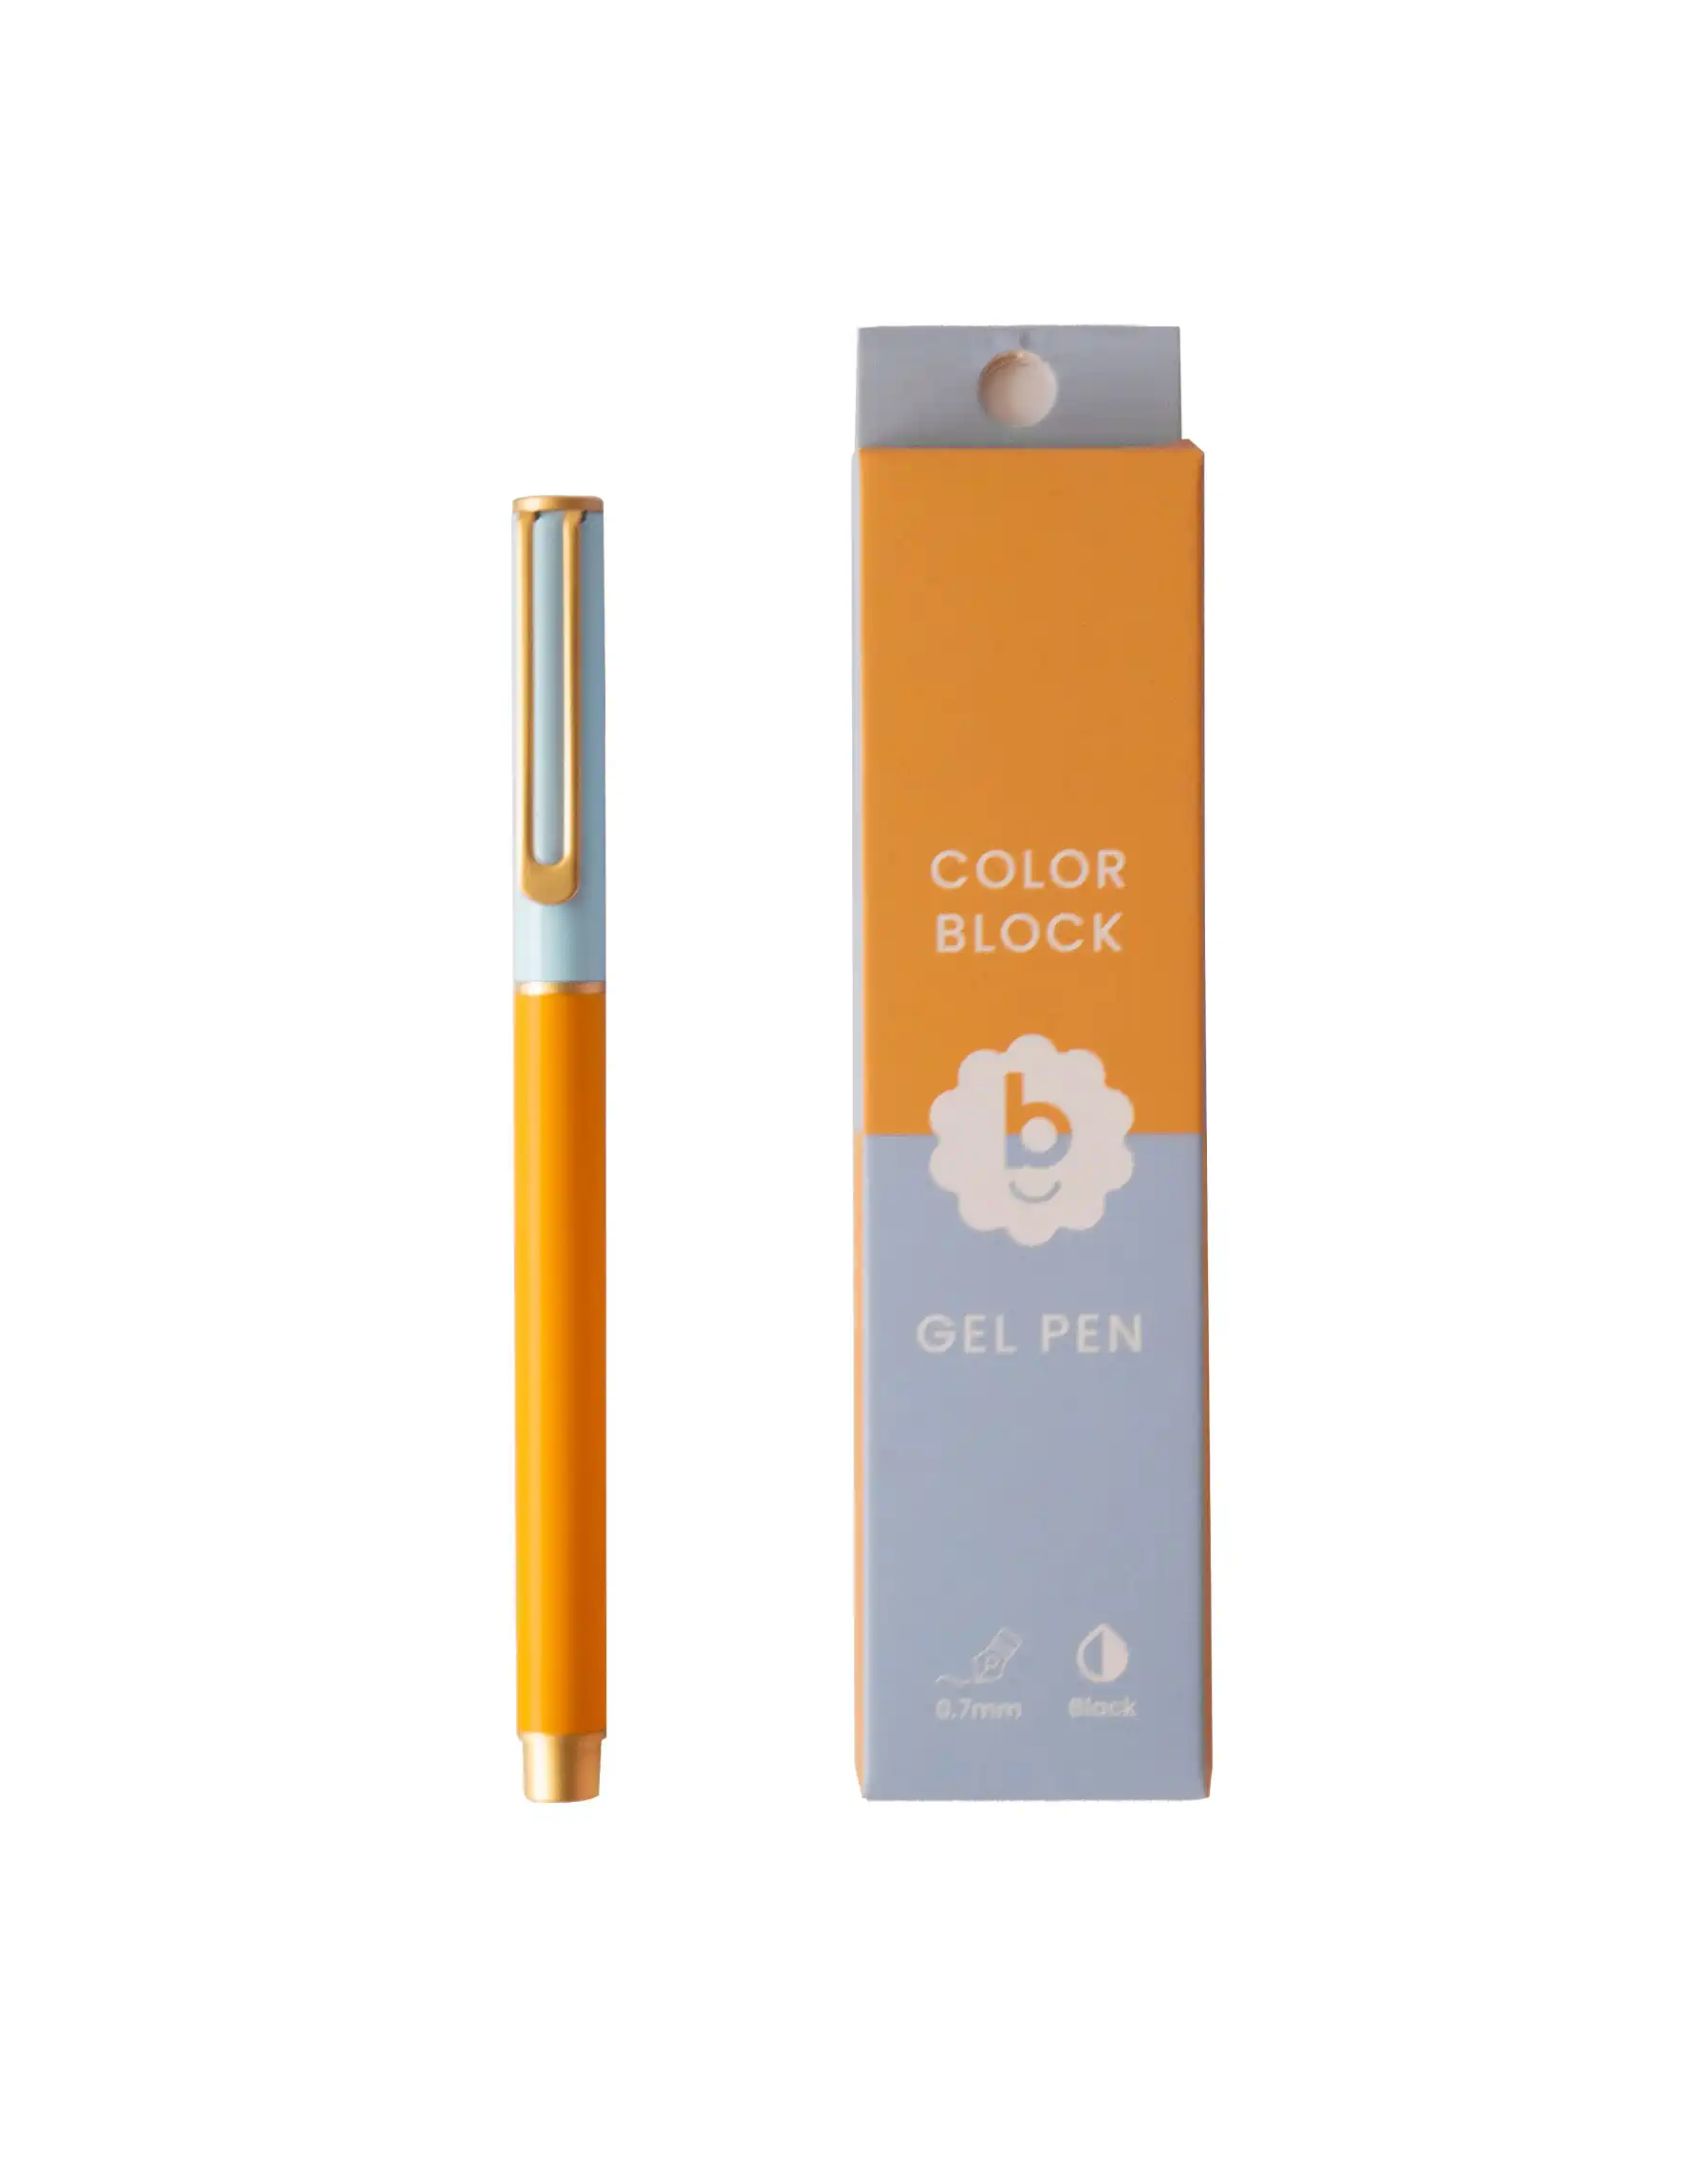 Bondito Colorblock Gel Pen – Inspire